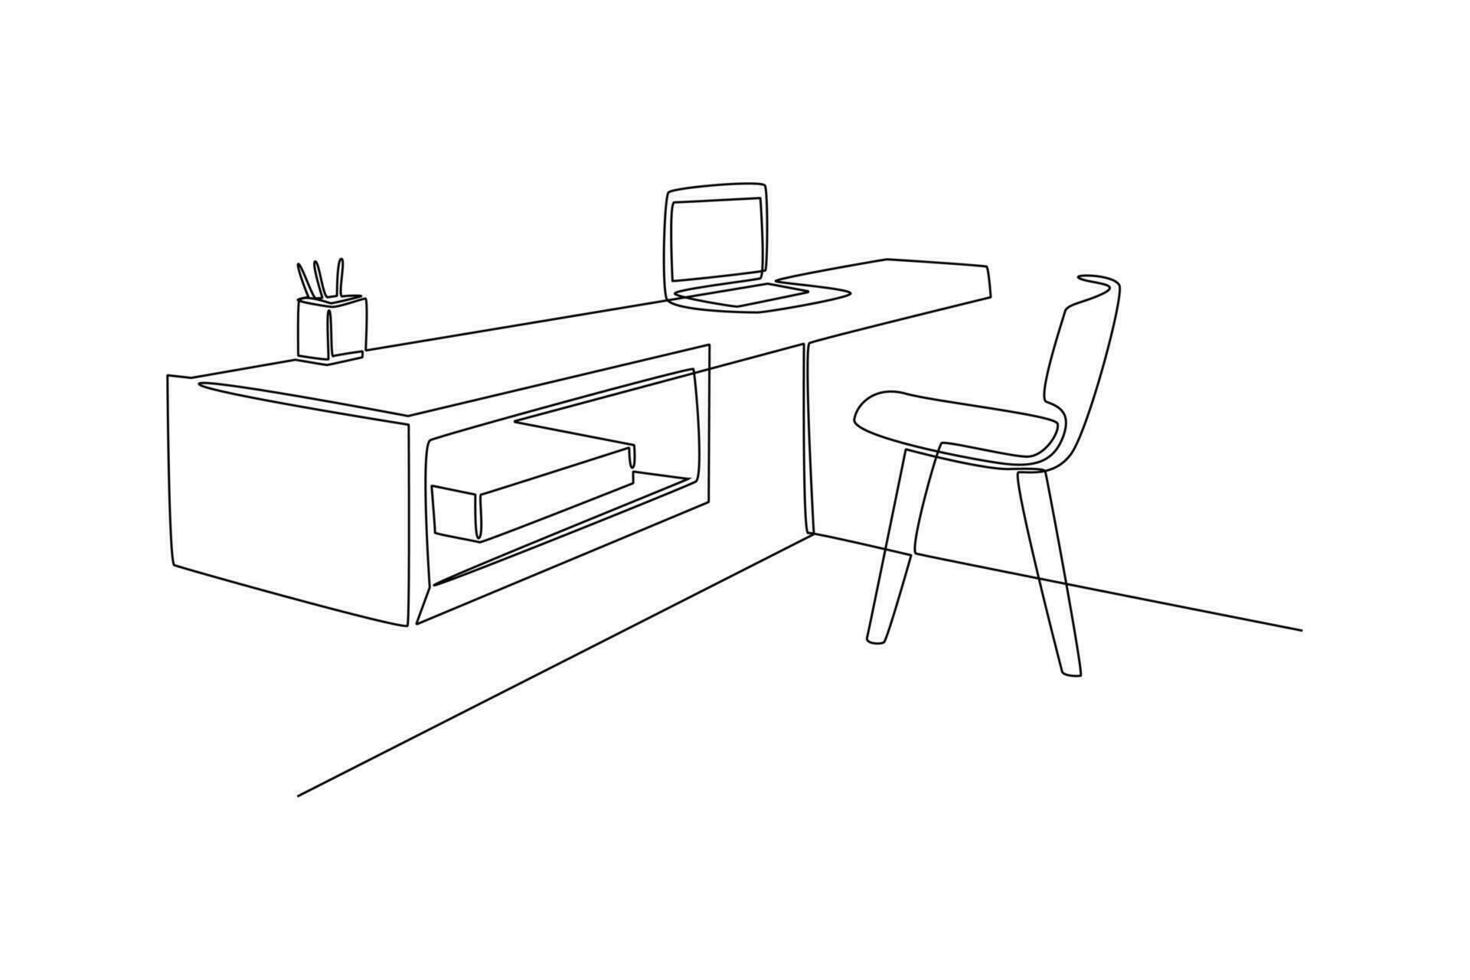 single een lijn tekening kantoor werkstation meubilair interieur concept. doorlopend lijn trek ontwerp grafisch vector illustratie.